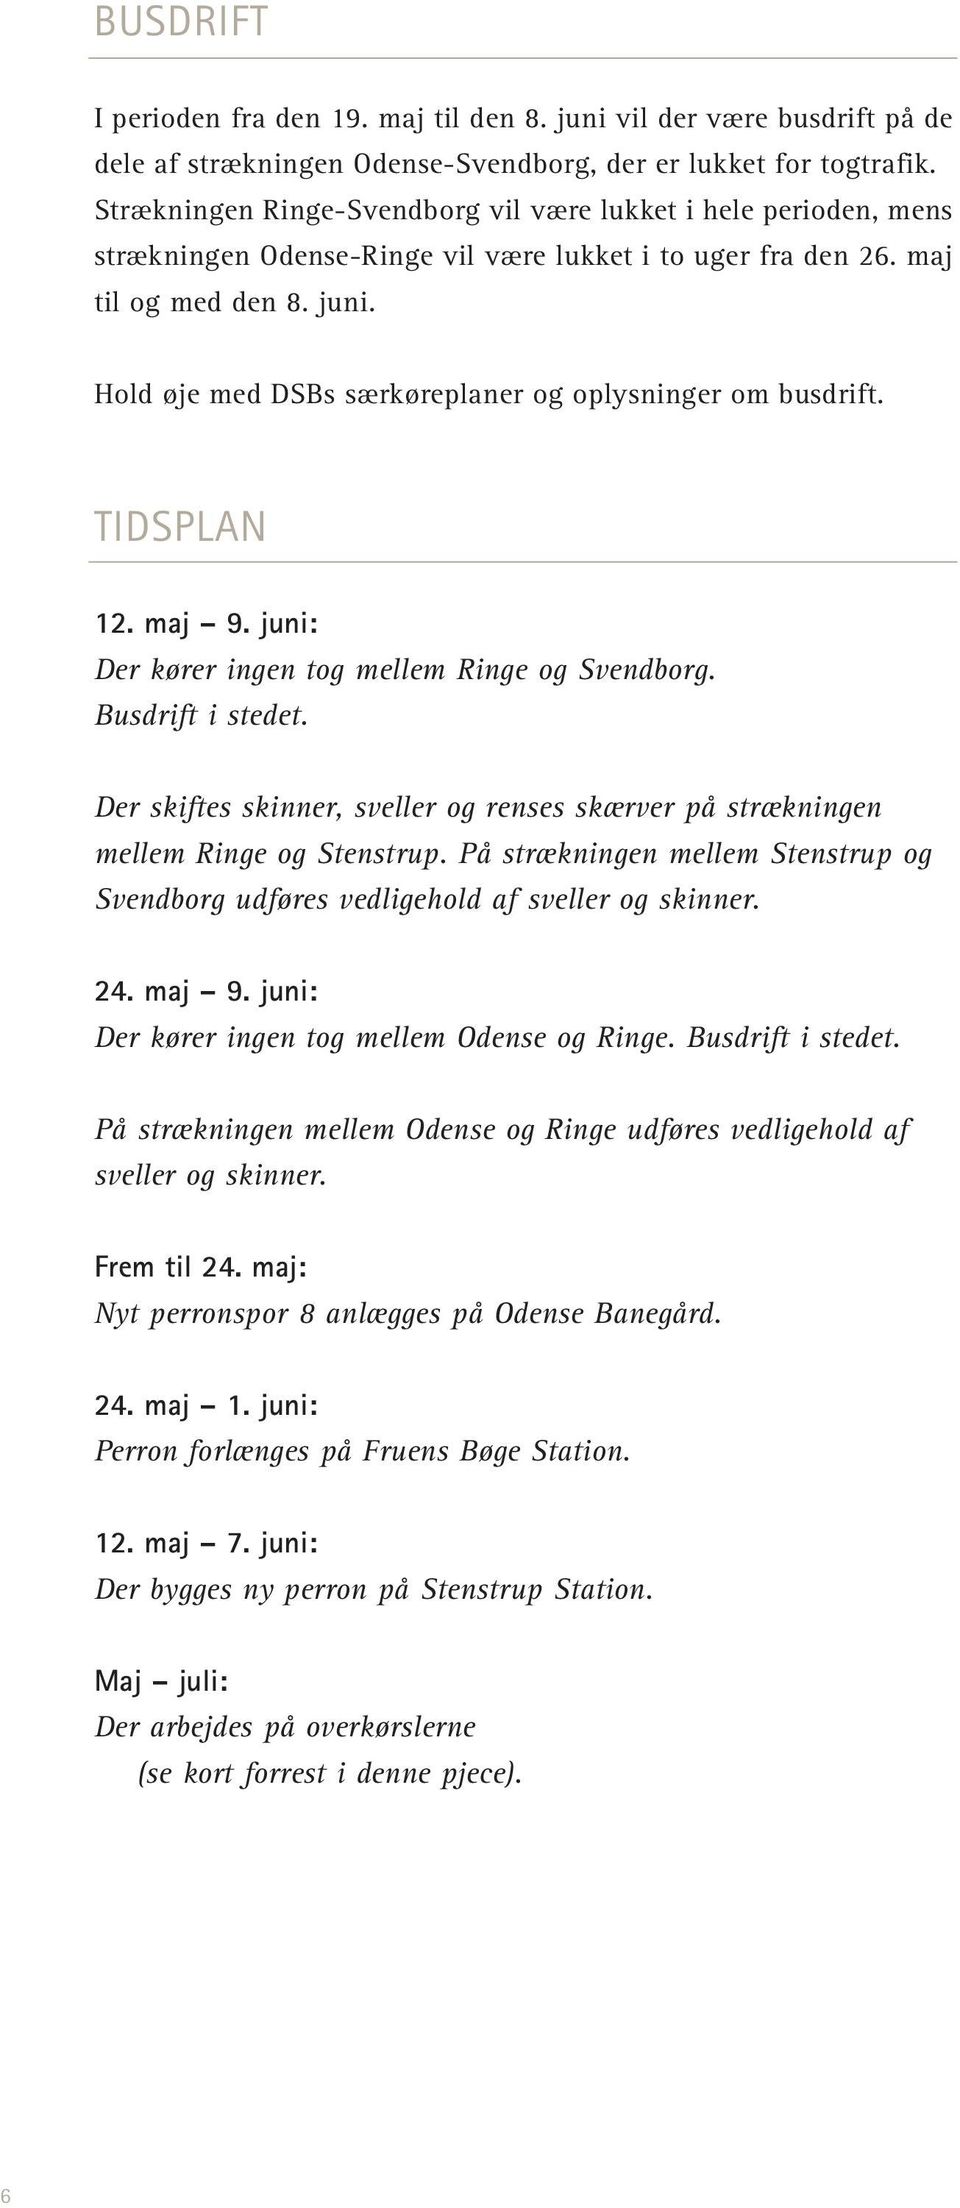 Hold øje med DSBs særkøreplaner og oplysninger om busdrift. TIDSPLAN 12. maj 9. juni: Der kører ingen tog mellem Ringe og Svendborg. Busdrift i stedet.